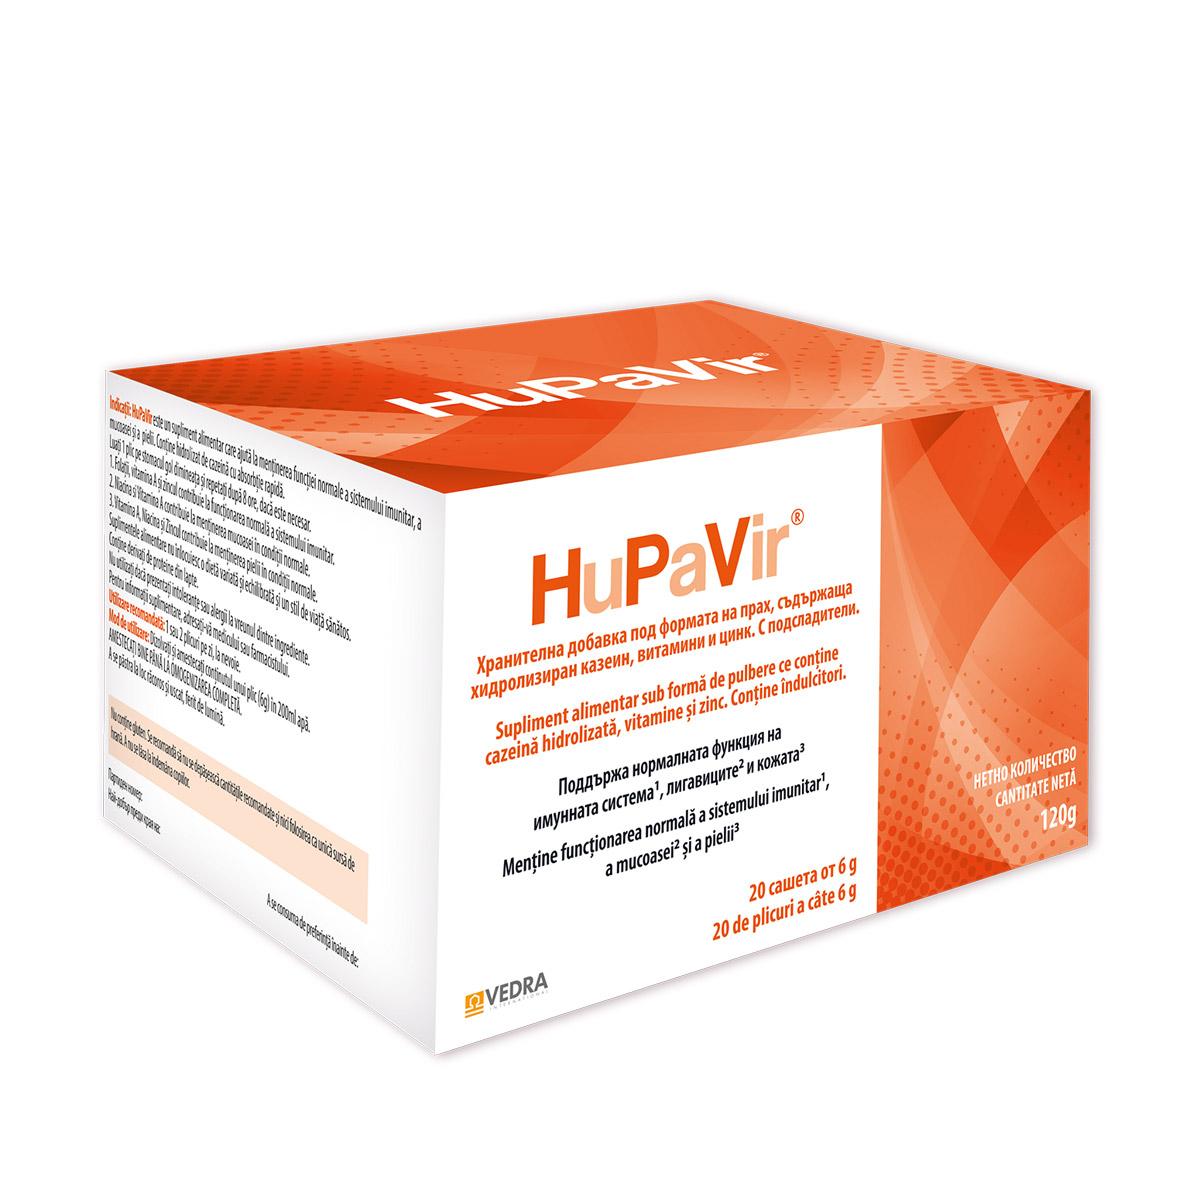 VEDRA INTERNATIONAL Preparat za jačanje imunog sistema i prevenciju u borbi protiv HPV virusa 20/1 127025